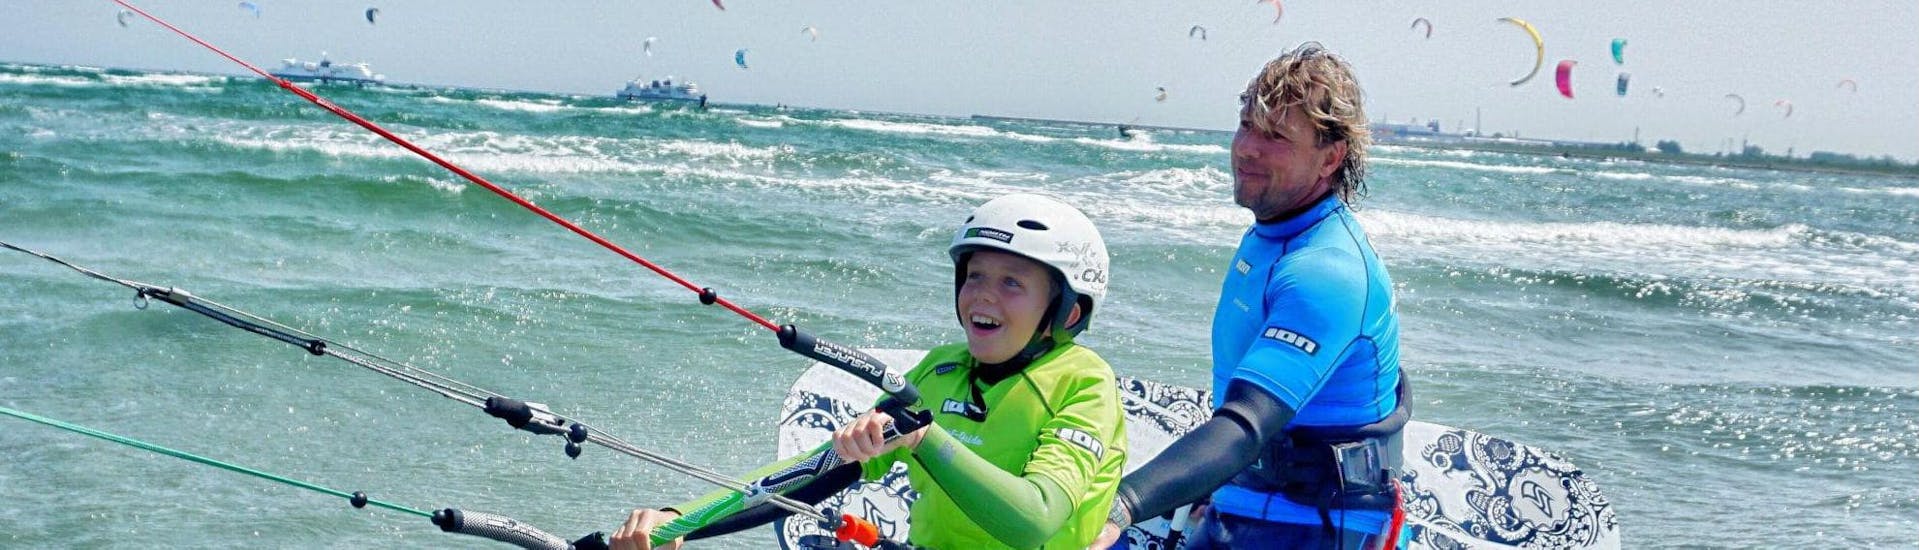 Cours de kitesurf à Fehmarn (dès 8 ans).